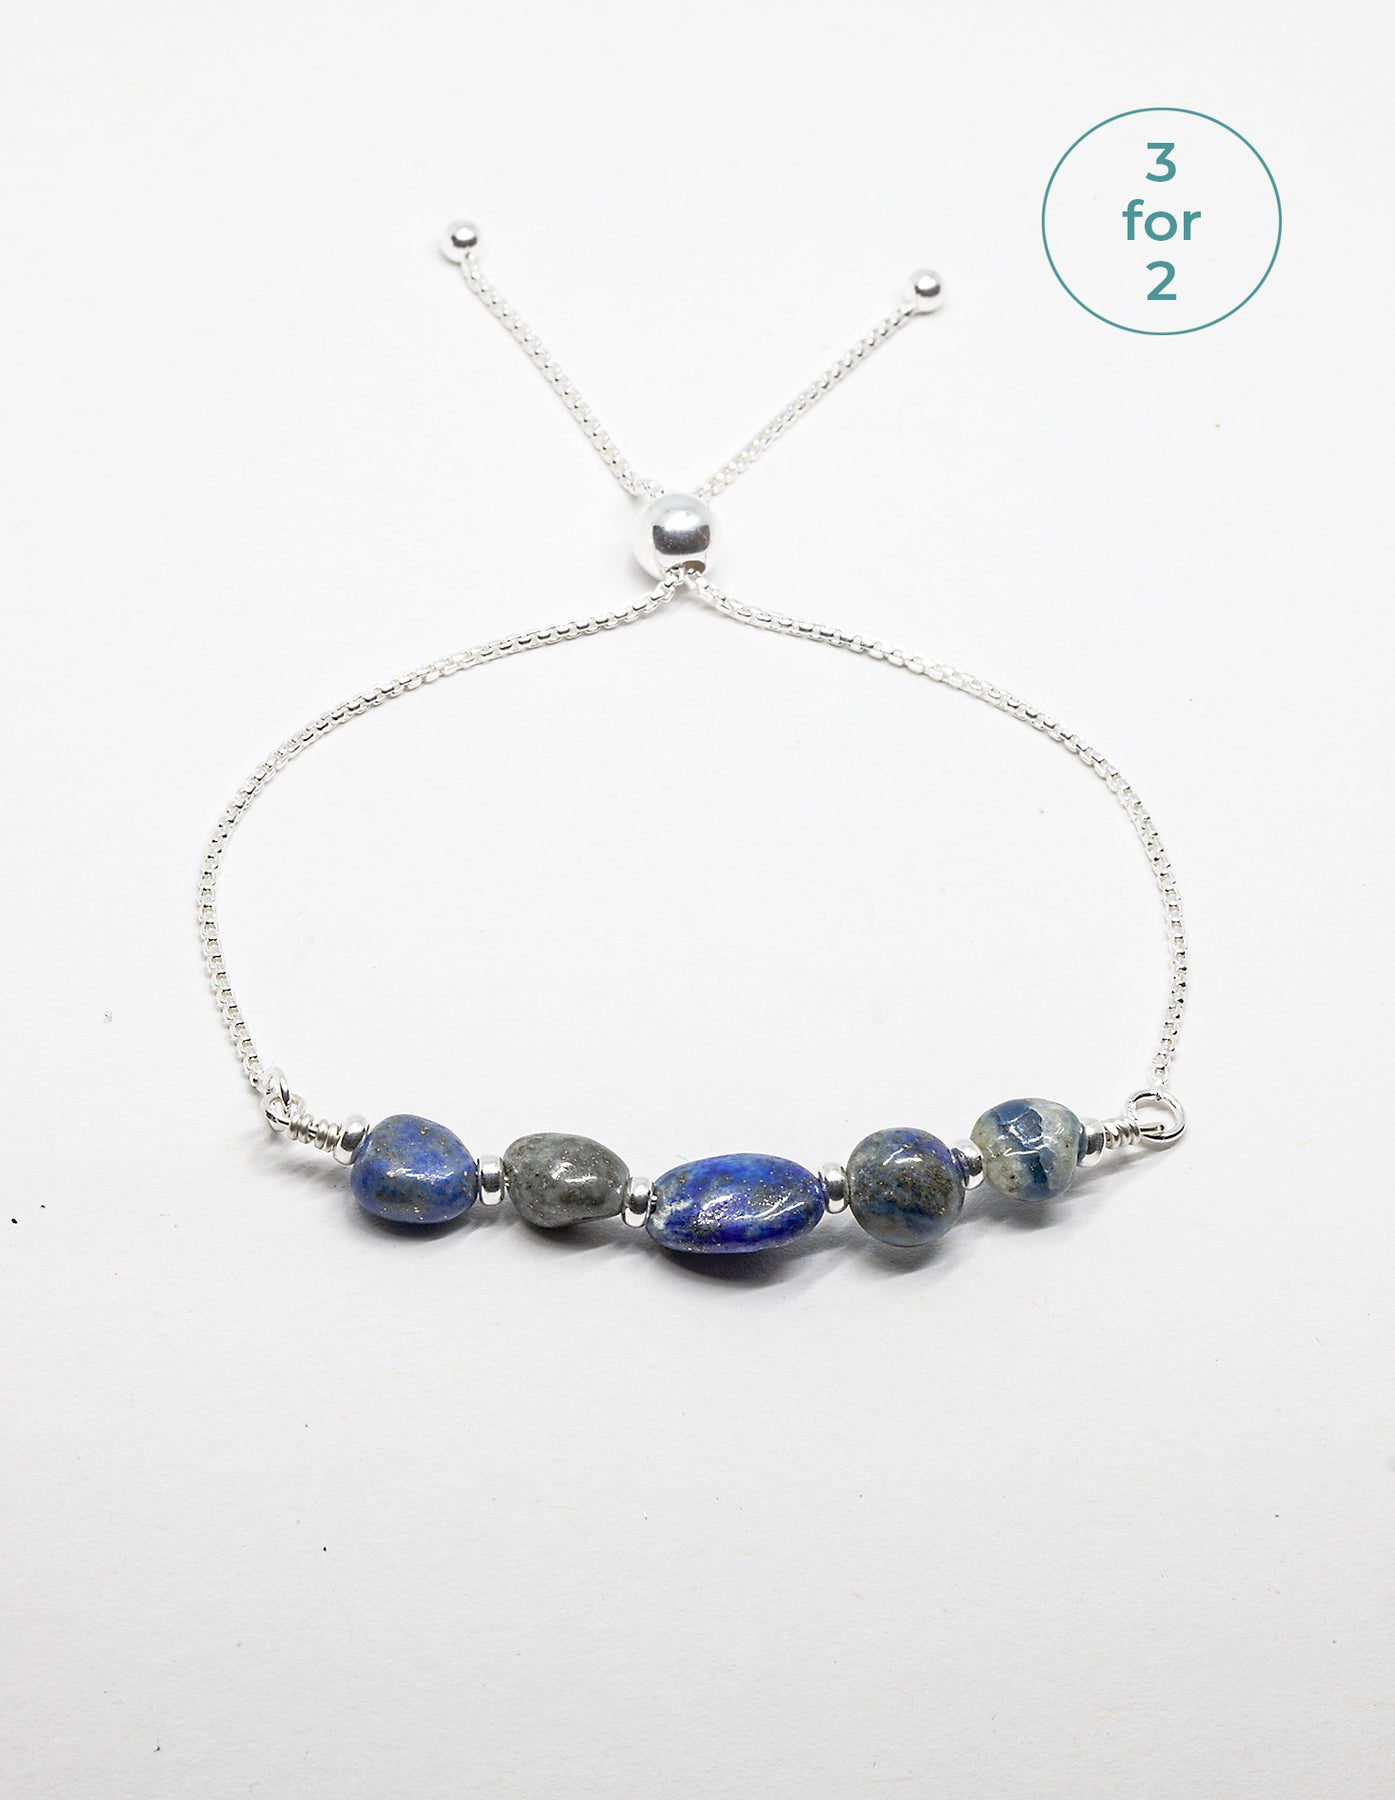 Buy the Lapis Jade Gemstone Bracelet | Peace N Beads – Peace N Beads Design